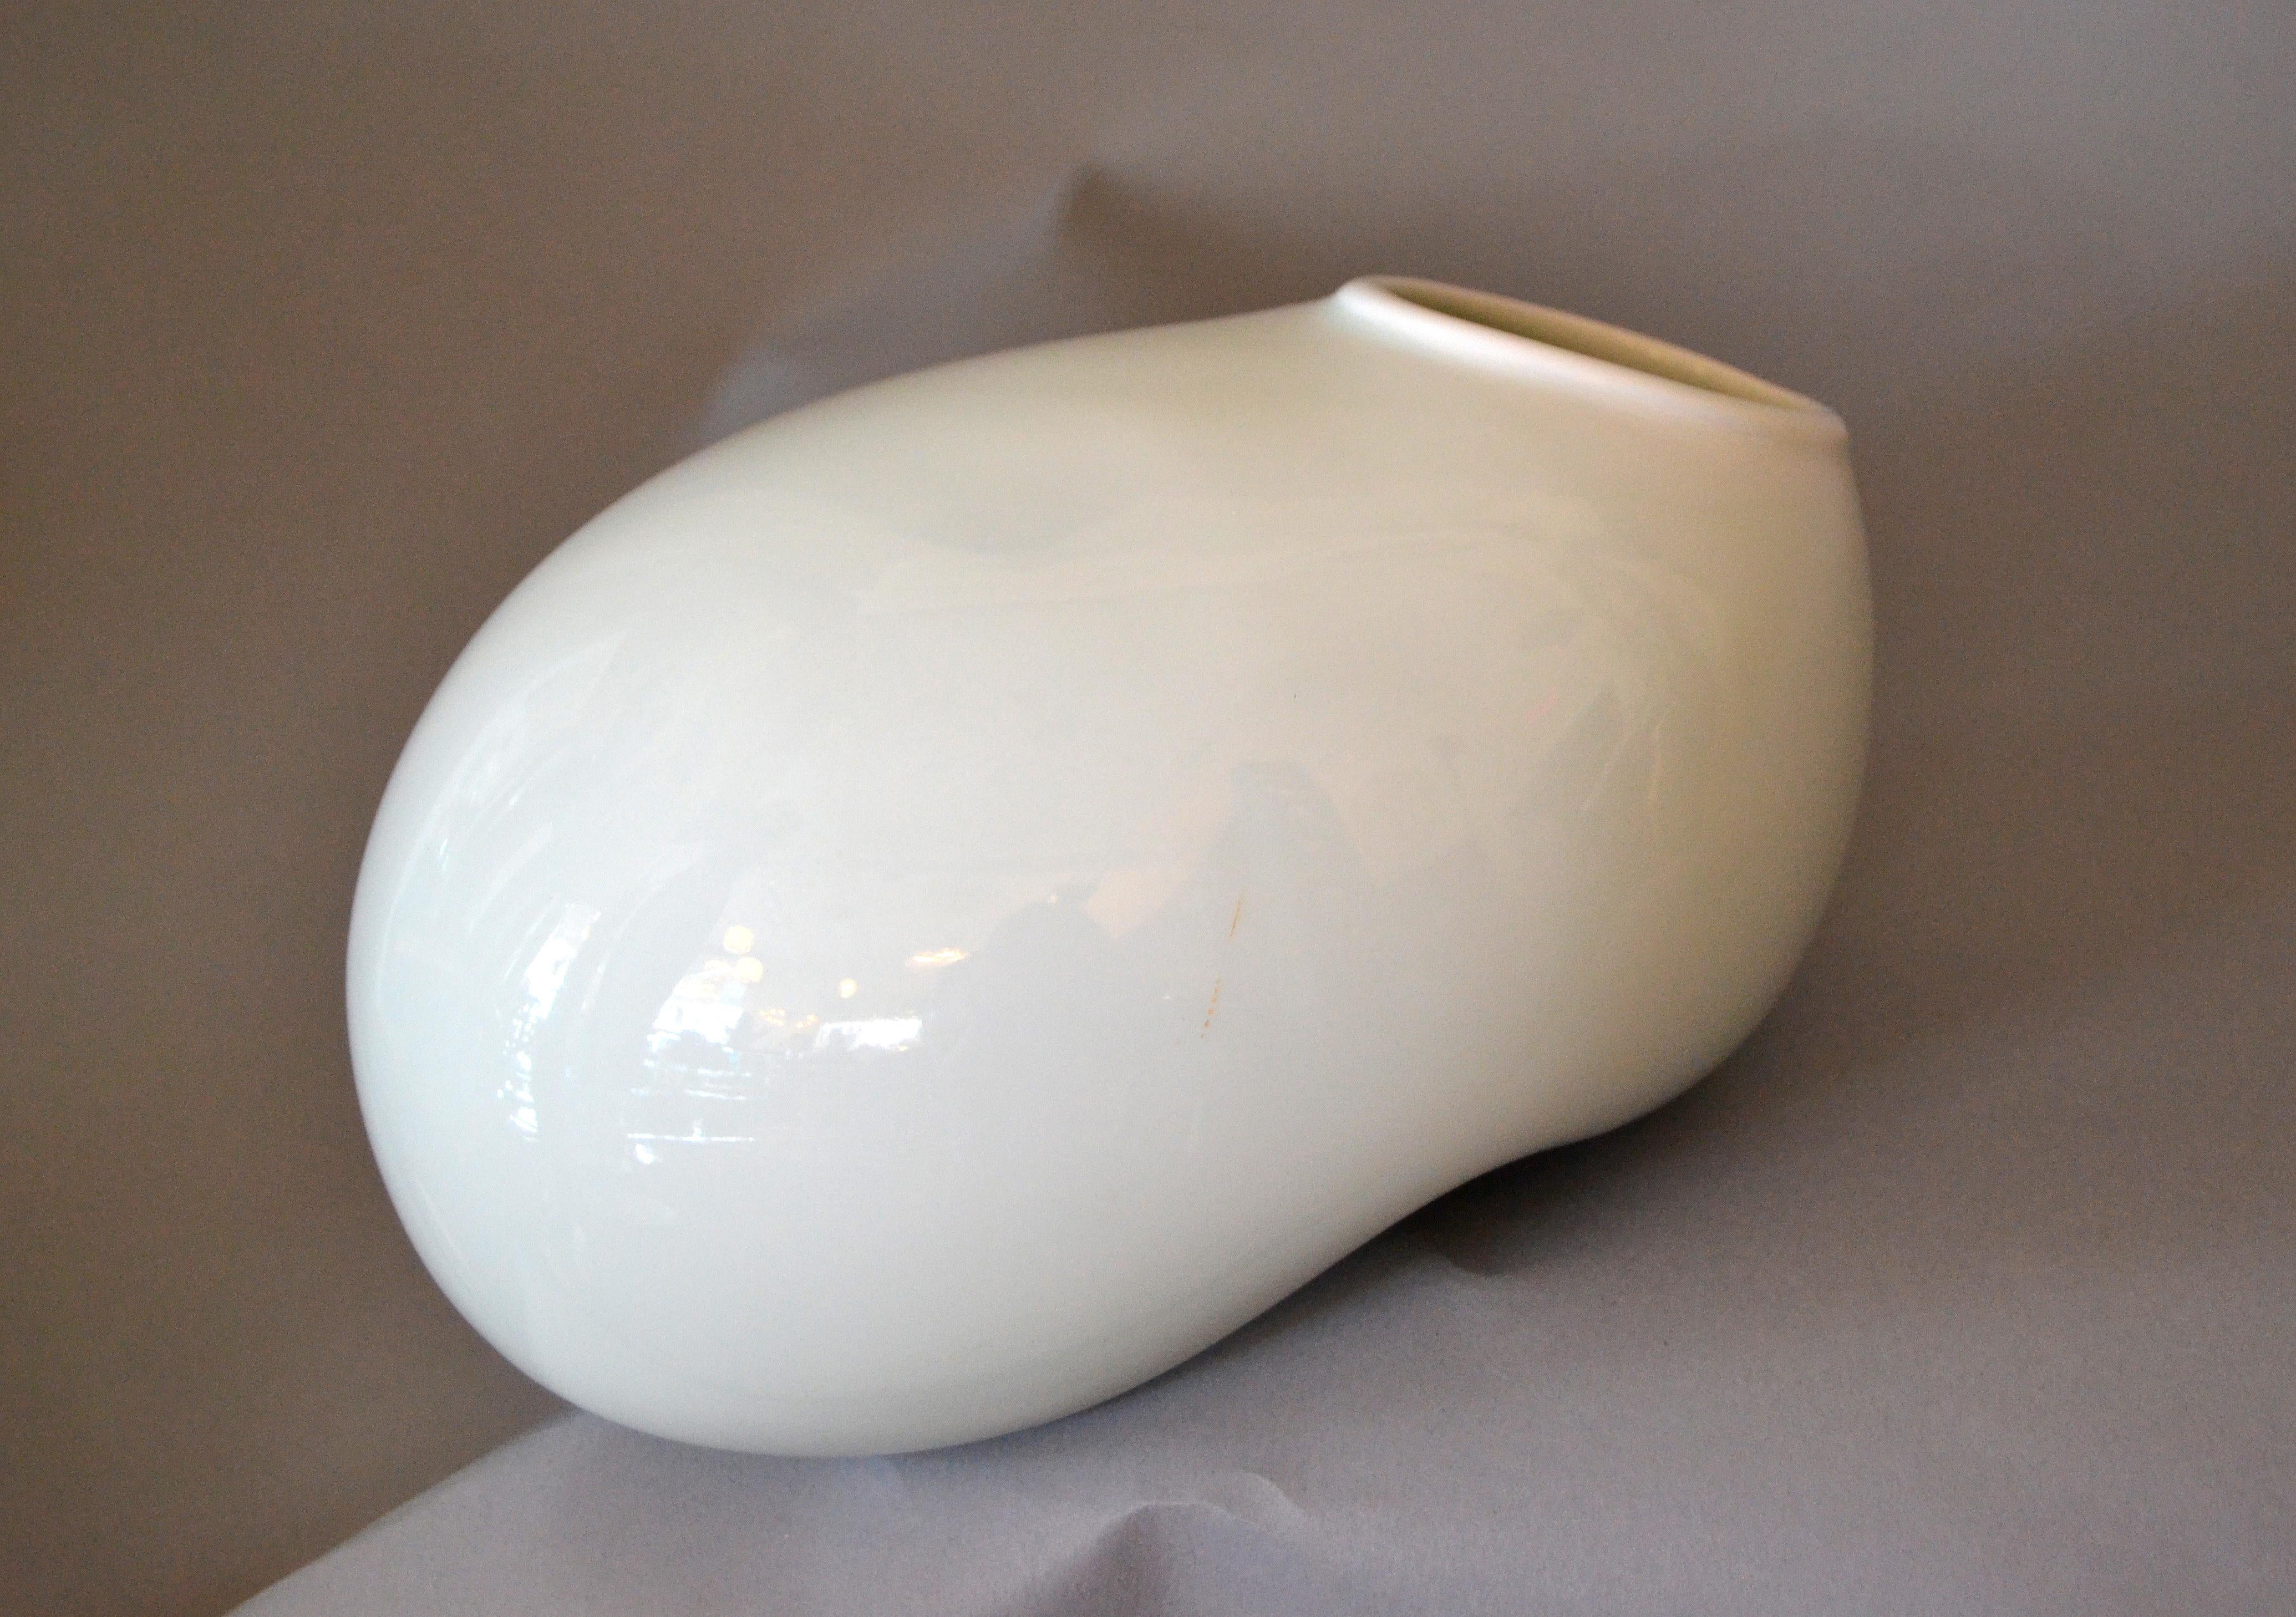 Organic Asian Modern White Ceramic Water Bag Vase Made by Spin Ceramics Shanghai 3